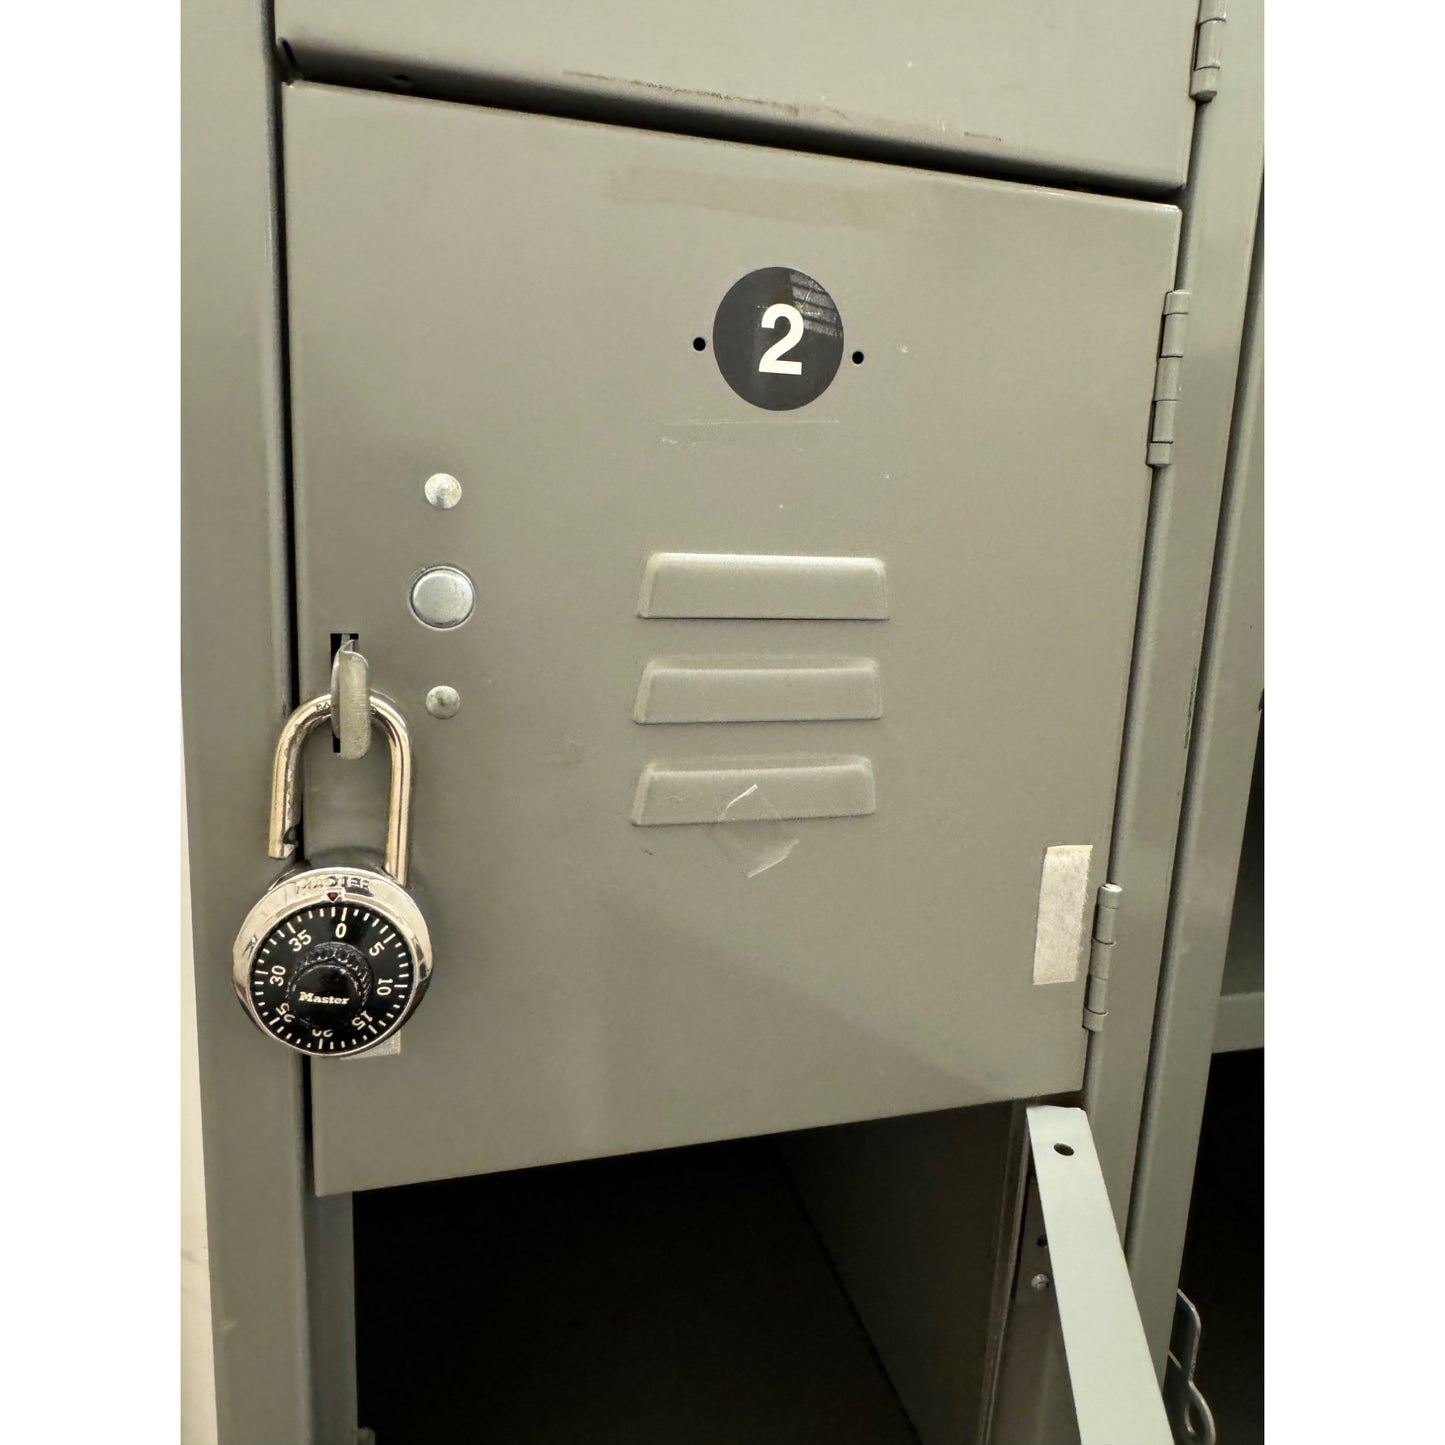 Metal Storage Lockers